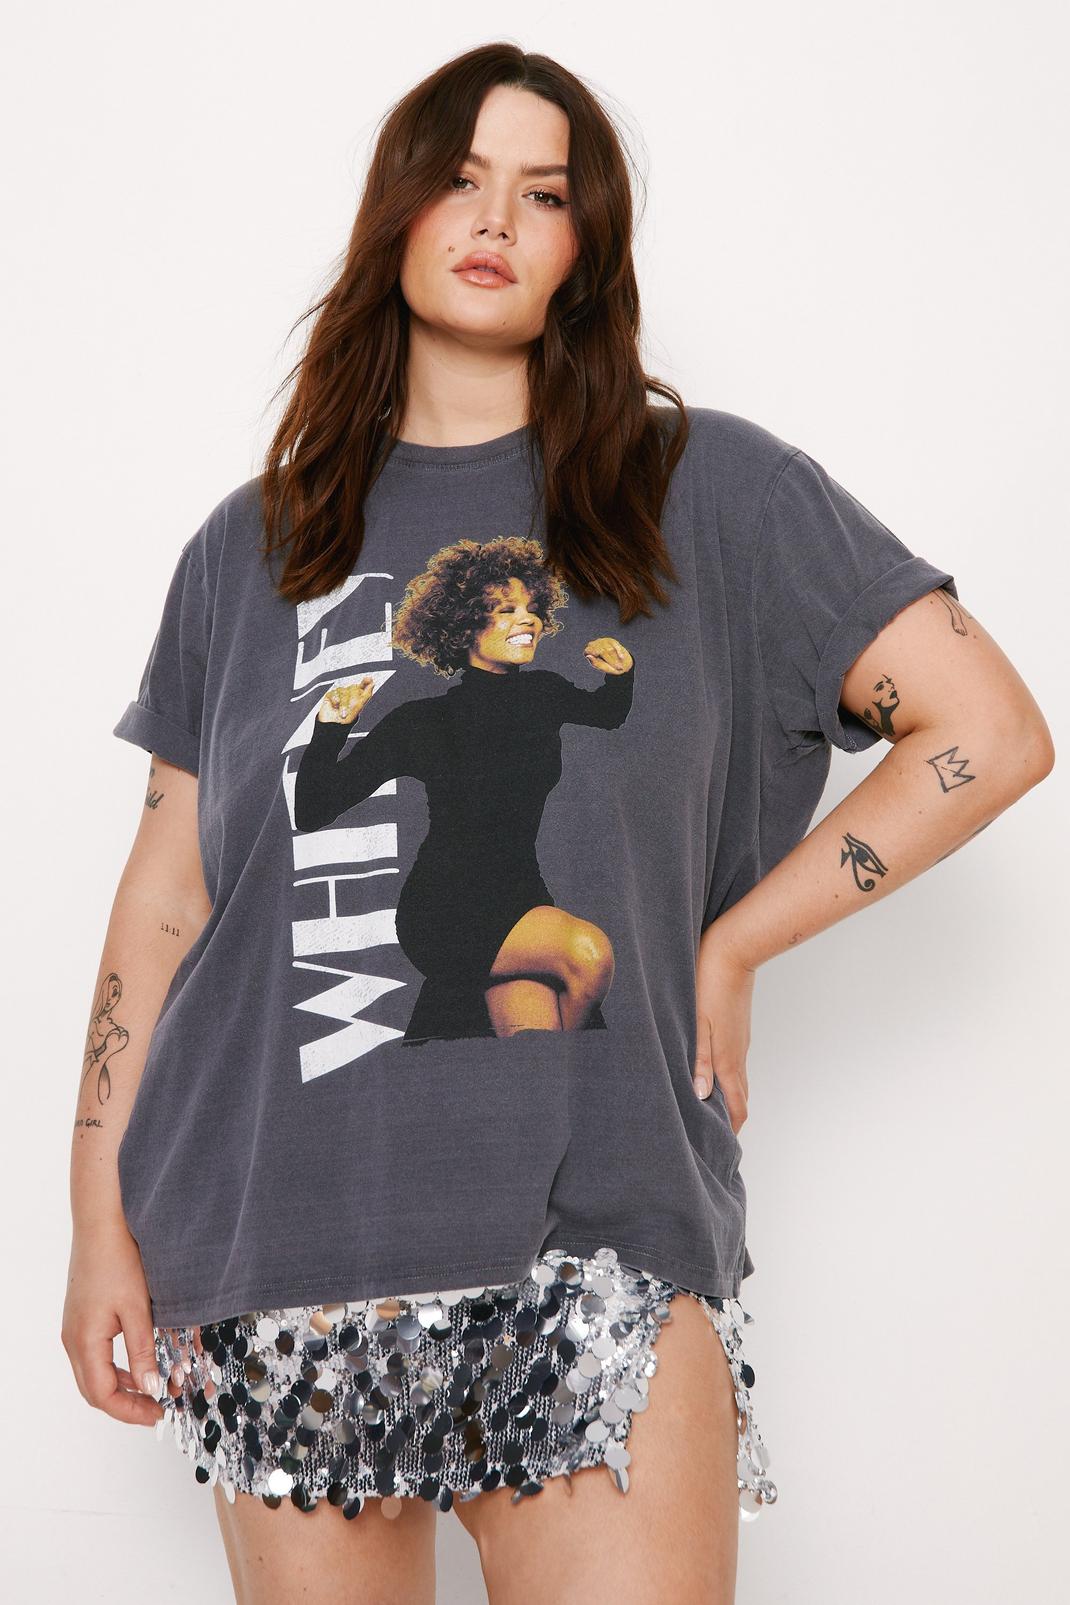 Charcoal Plus Size Whitney Houston Graphic Overdyed Oversized T-shirt image number 1